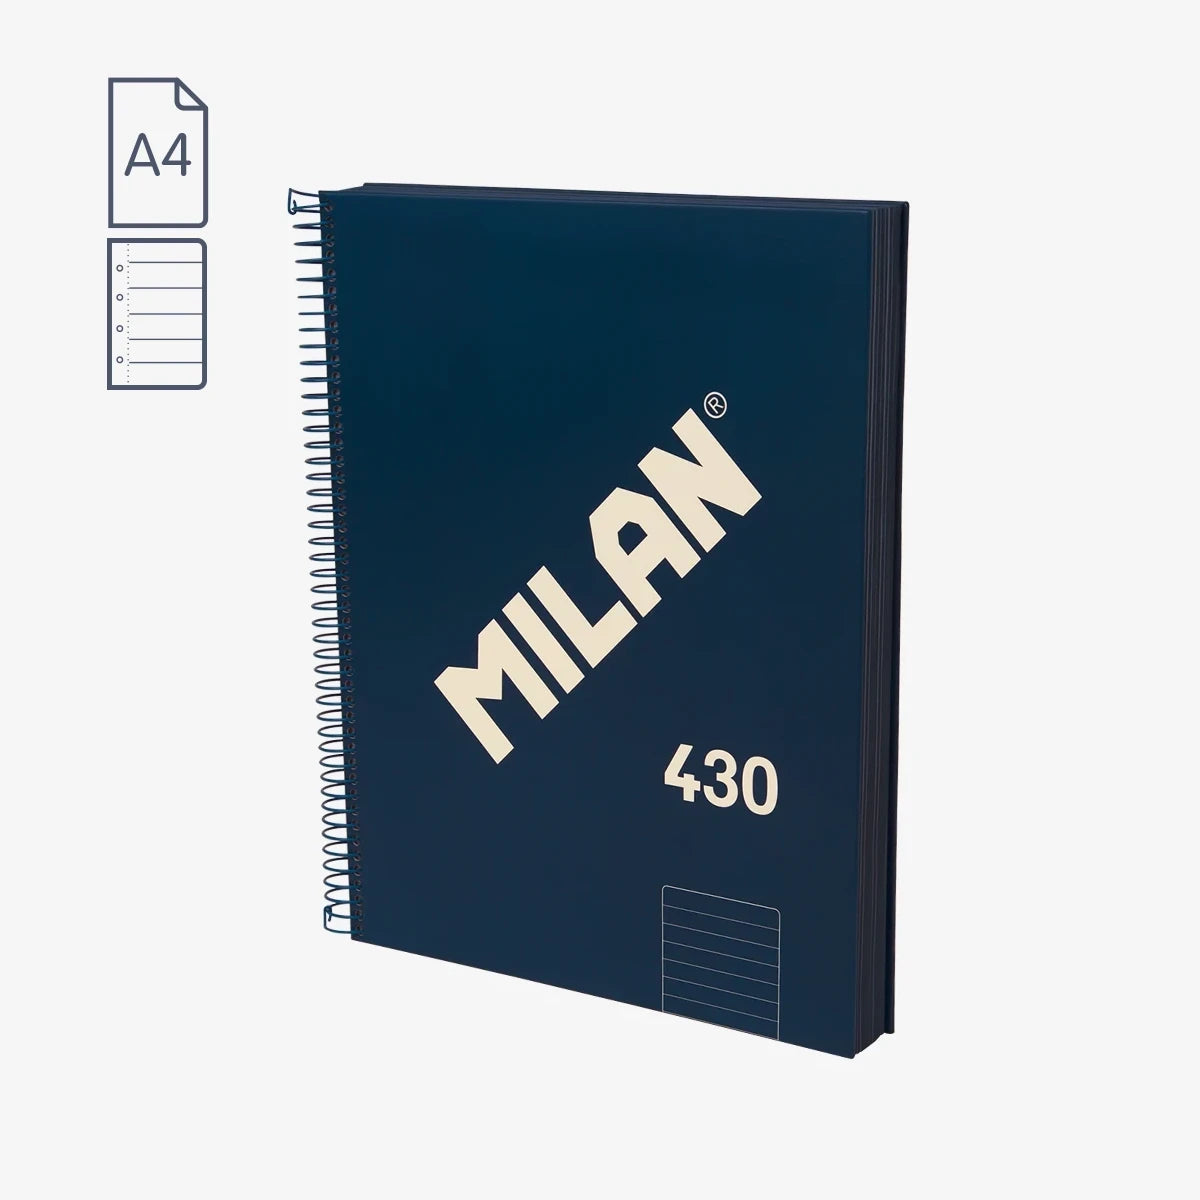 Cuaderno A4 con tapa dura, pauta a líneas 7 mm, papel de 95 gr/m², 430 since 1918